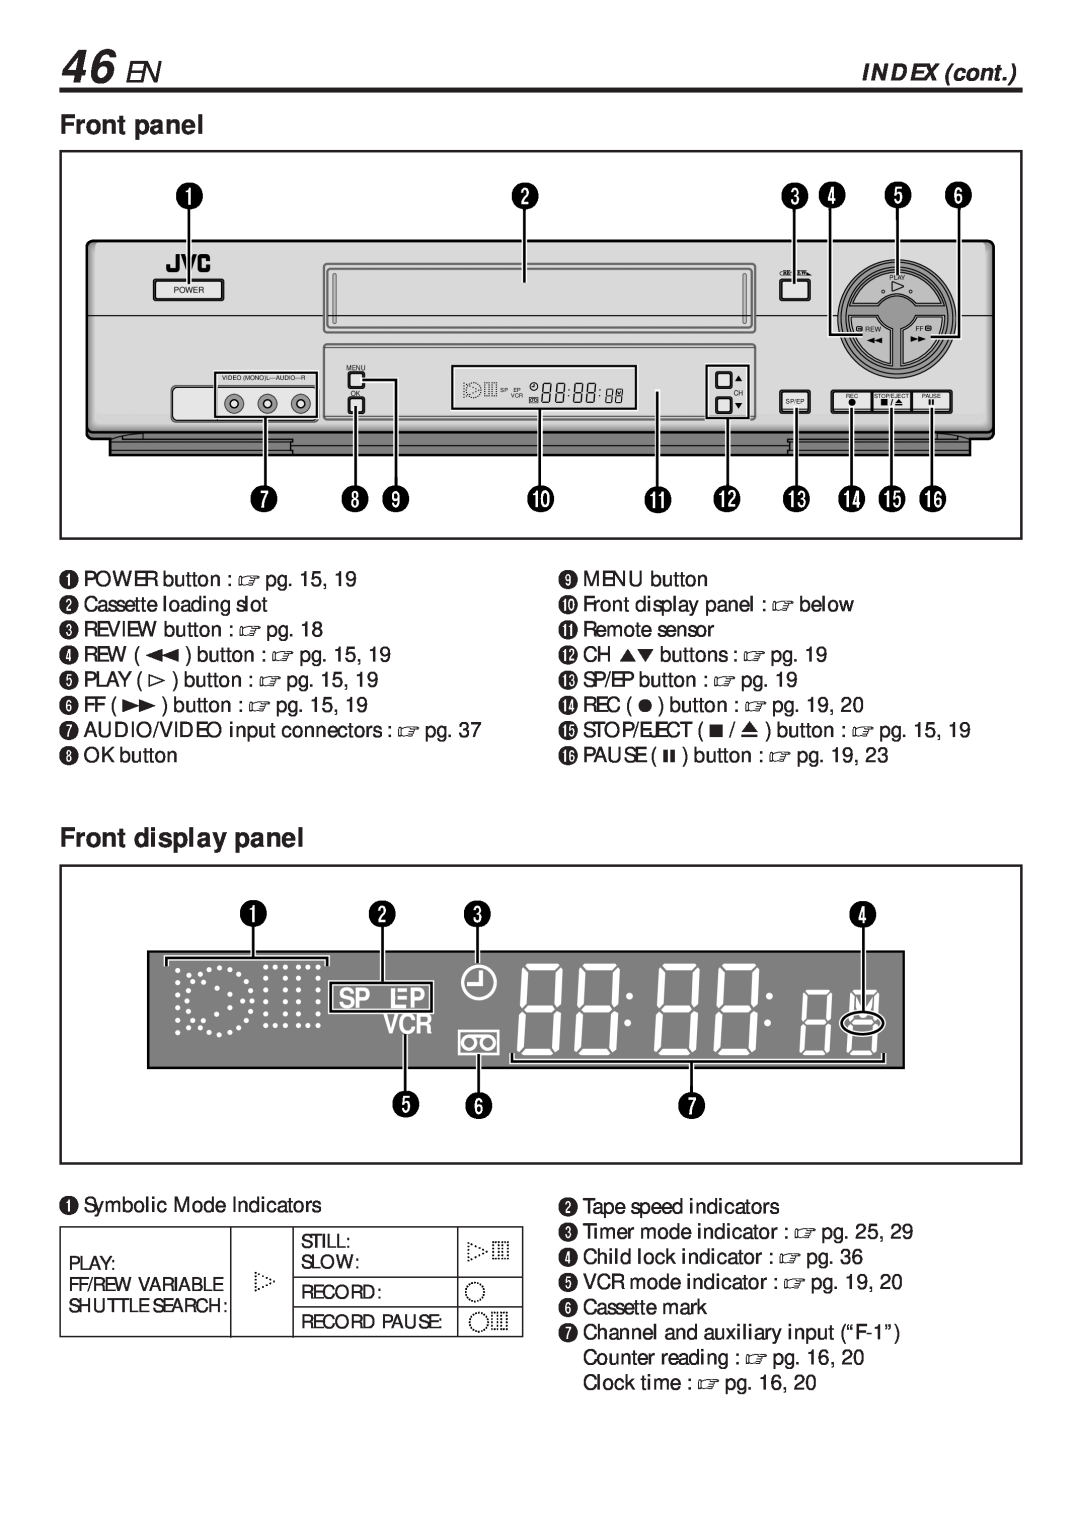 JVC HR-VP682U manual 46 EN, Front panel, Front display panel, INDEX cont 